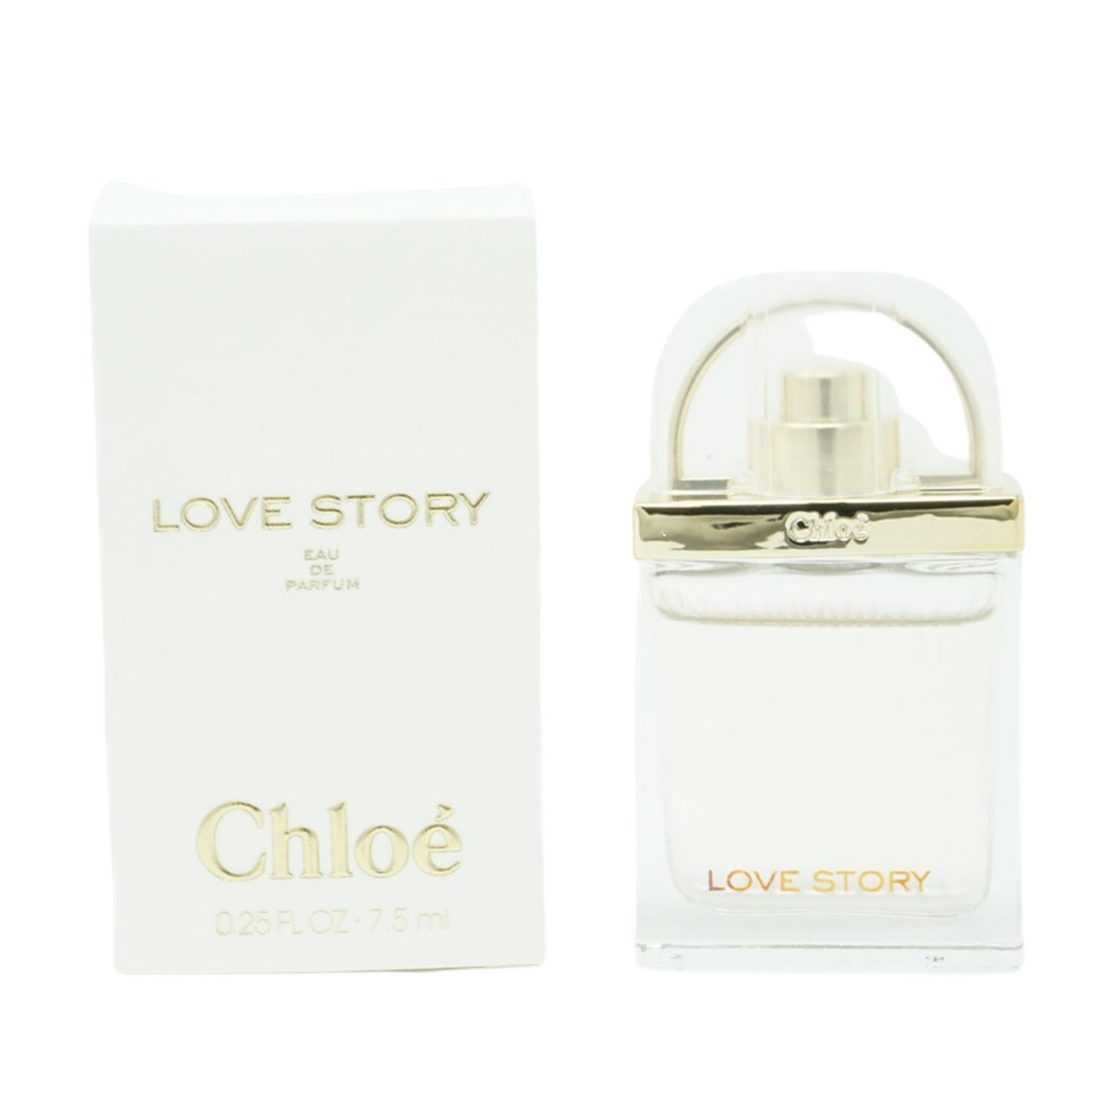 Chloé Eau de Parfum Chloé Love Story Miniatur Eau de Parfum 7,5ml